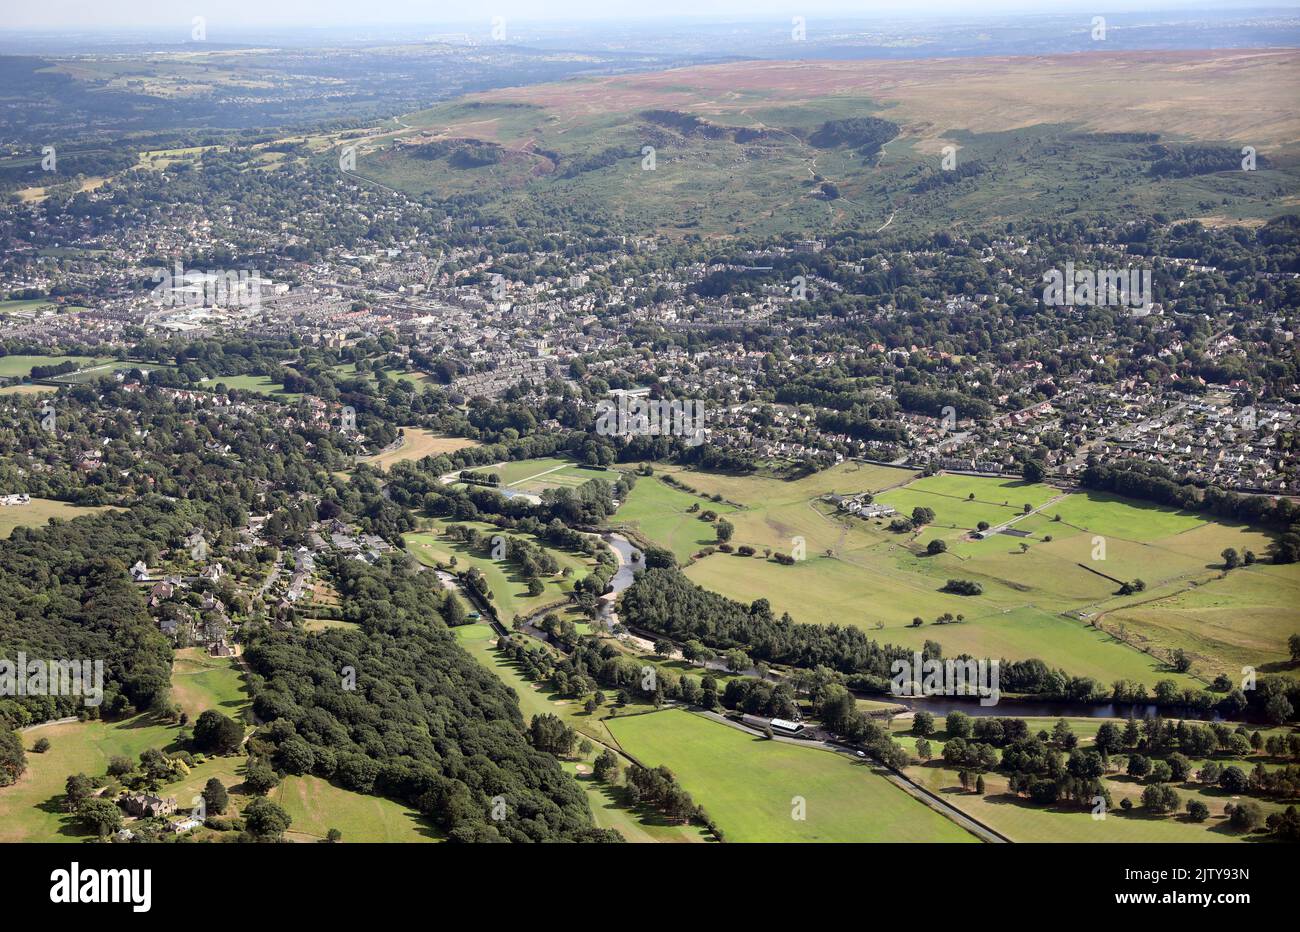 Vista aérea de la ciudad de Yorkshire de Ilkley, con el río Wharfe en primer plano, el centro de la ciudad y luego Ilkley Moor en el backgorund Foto de stock